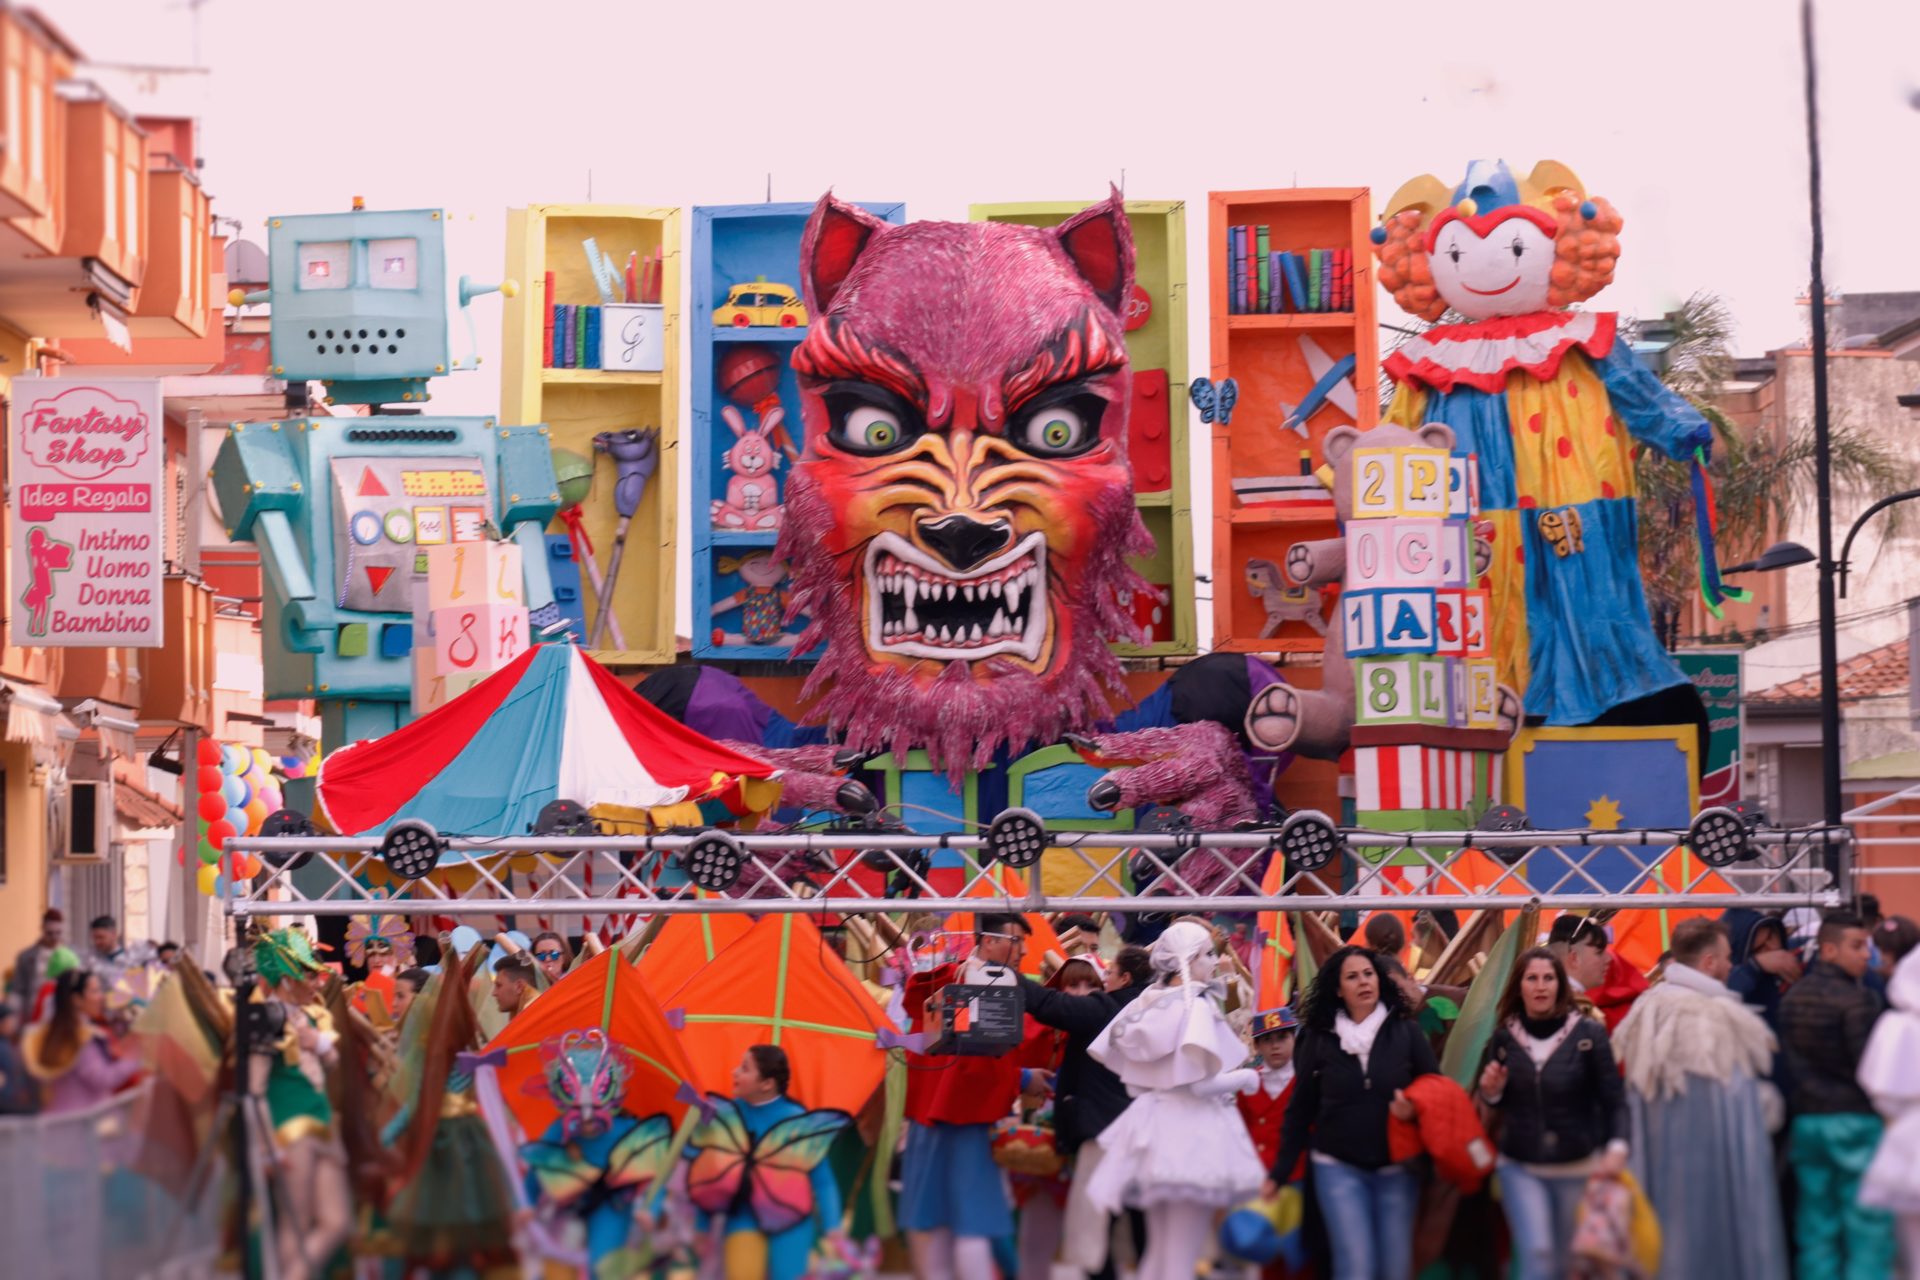 Carnevale Villa Literno 2020: Il programma dei 5 giorni di festa